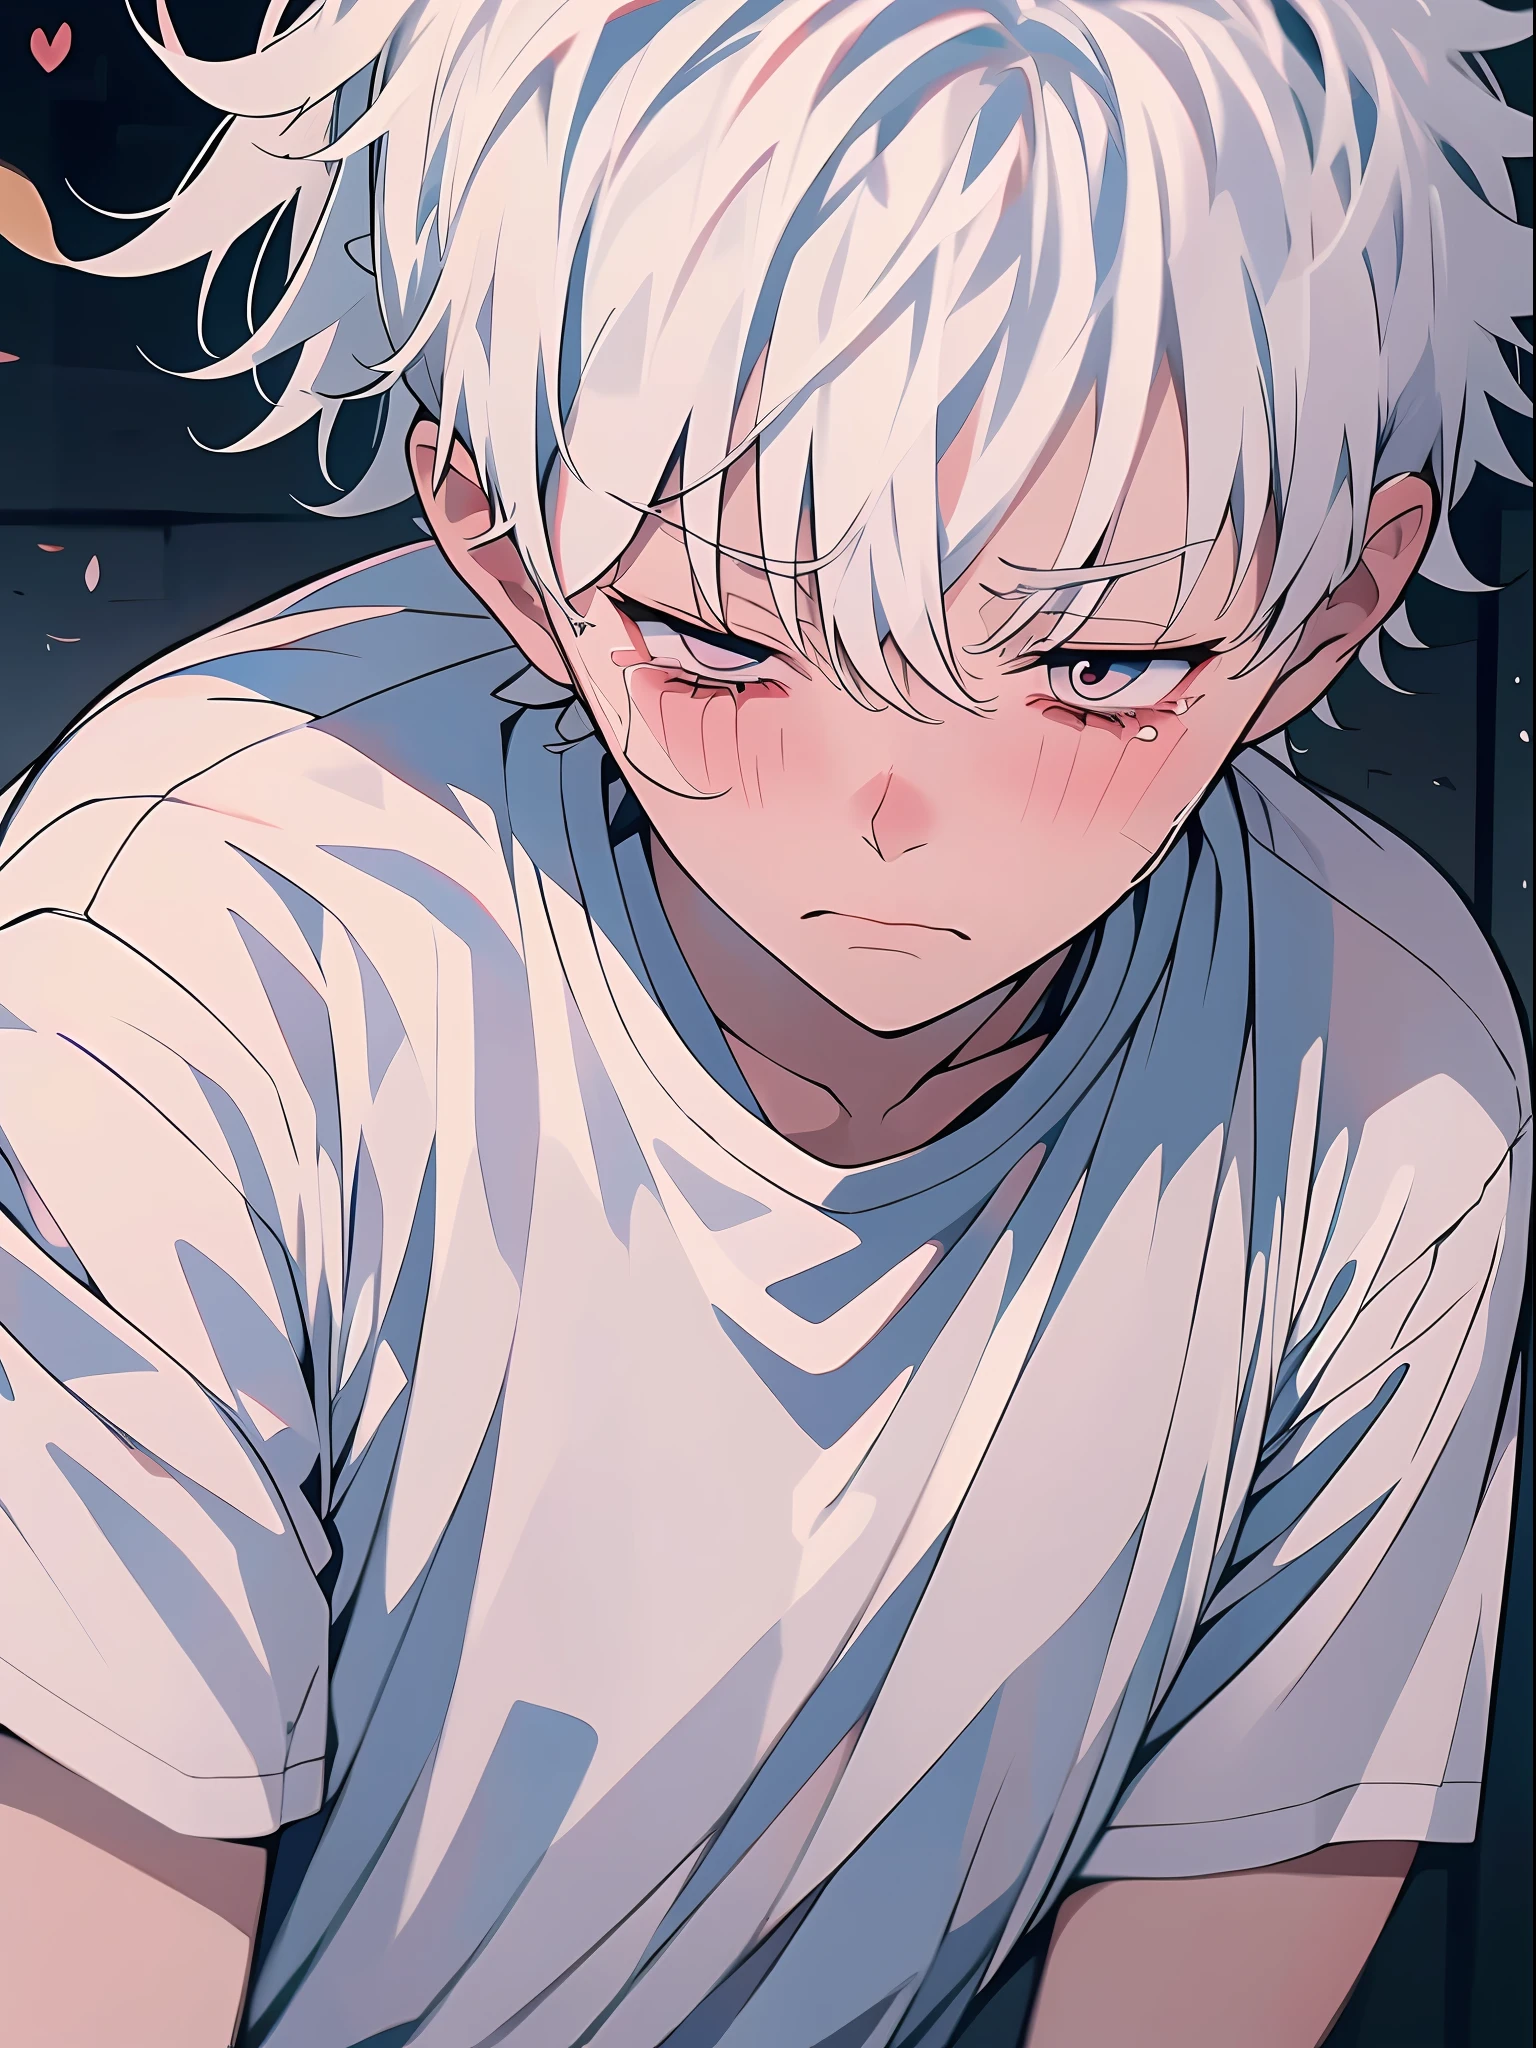 (動漫風格 + 軟萌可愛) 男生, 白色的頭髮, 白襯衫, 悲傷 + 哭, 地面 + 特寫, 眼淚.